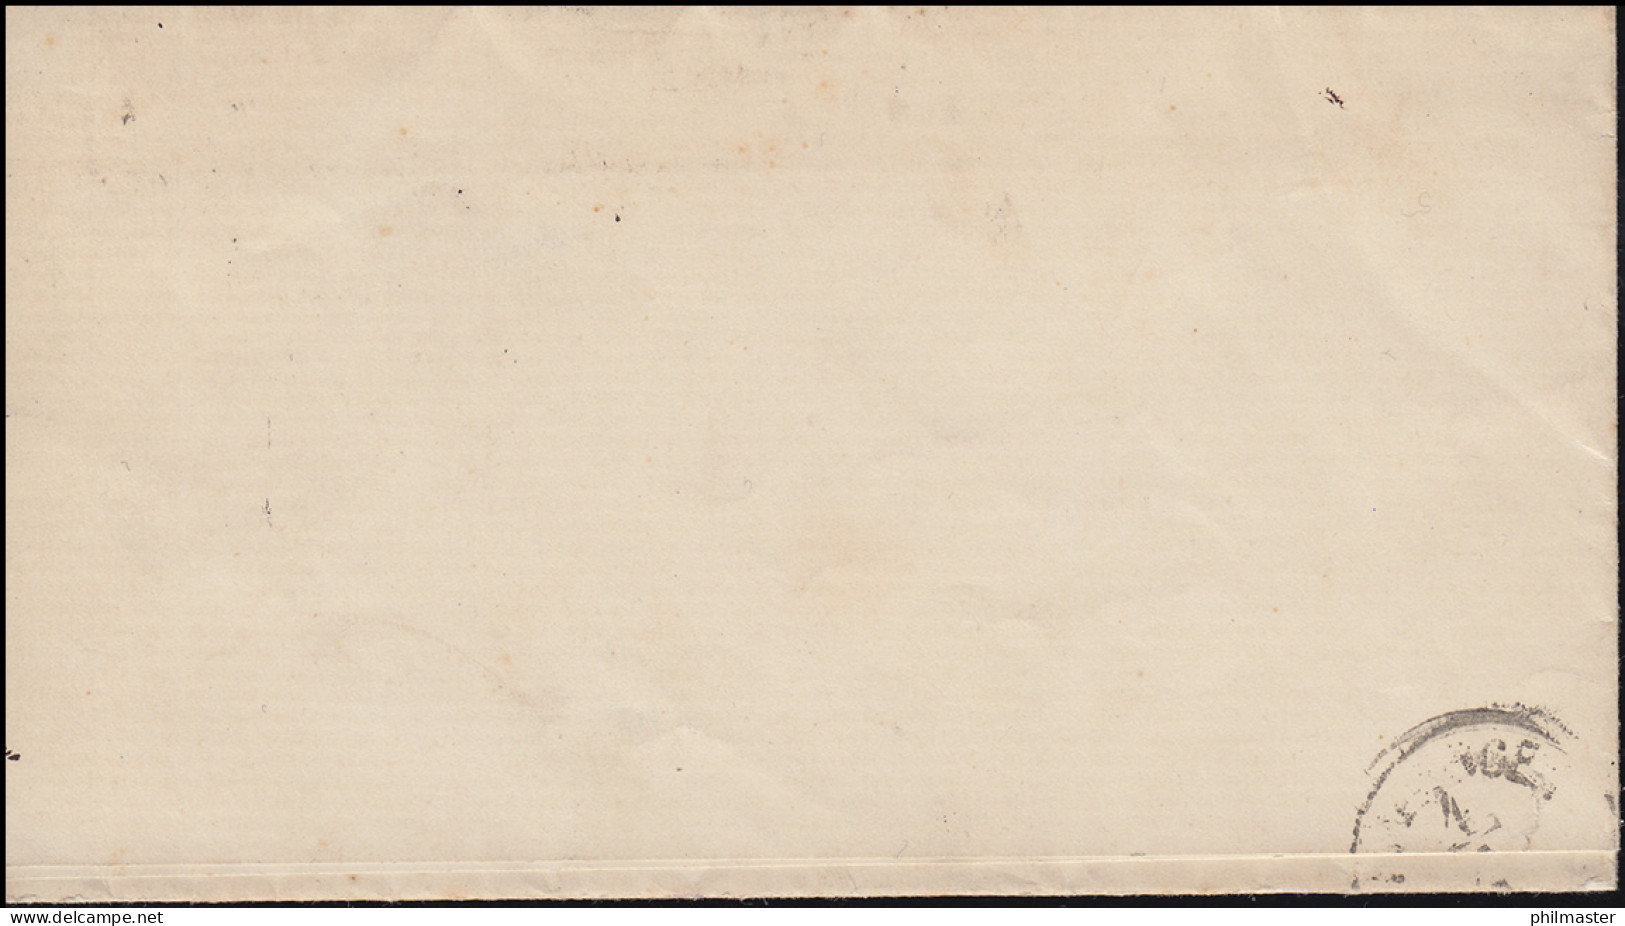 Norddeutscher Bund 14 Ziffer 1/3 Gr EF Brief DUISBURG 2.1.1870 Verlobungsanzeige - Briefe U. Dokumente